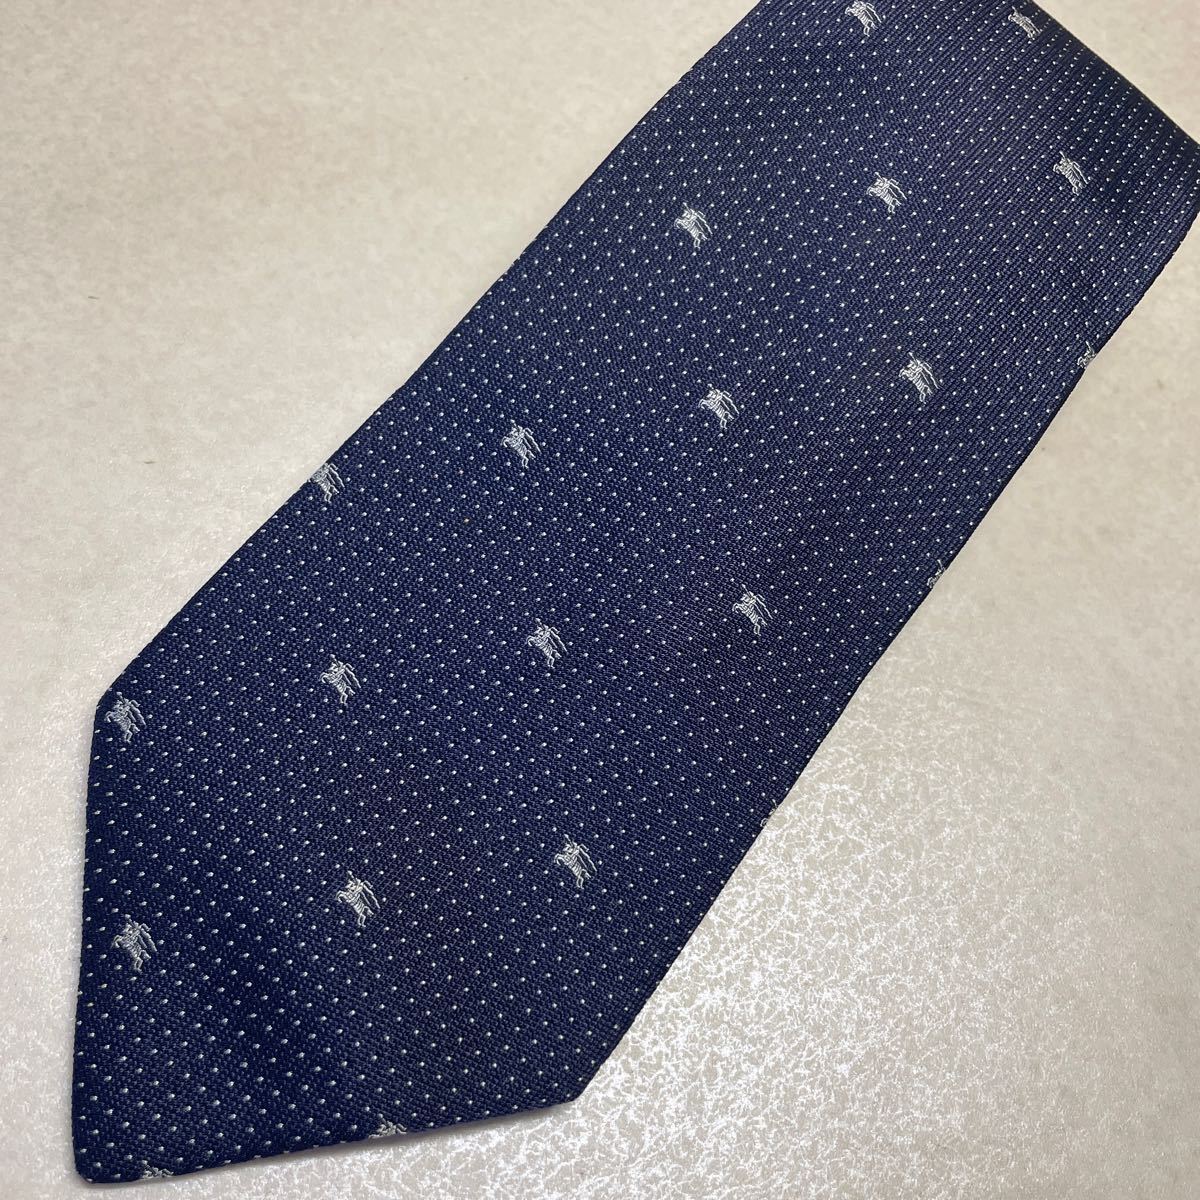  быстрое решение! произведена чистка # Burberry шланг Mark общий рисунок высококлассный шелк галстук темно-синий # точка синий серия 